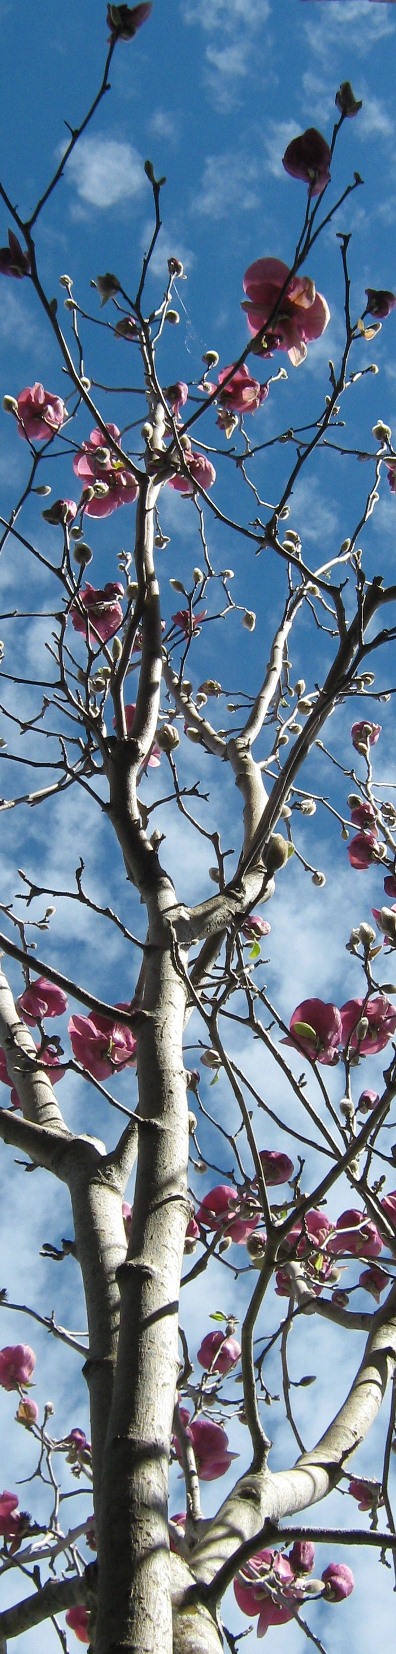 magnolia tree